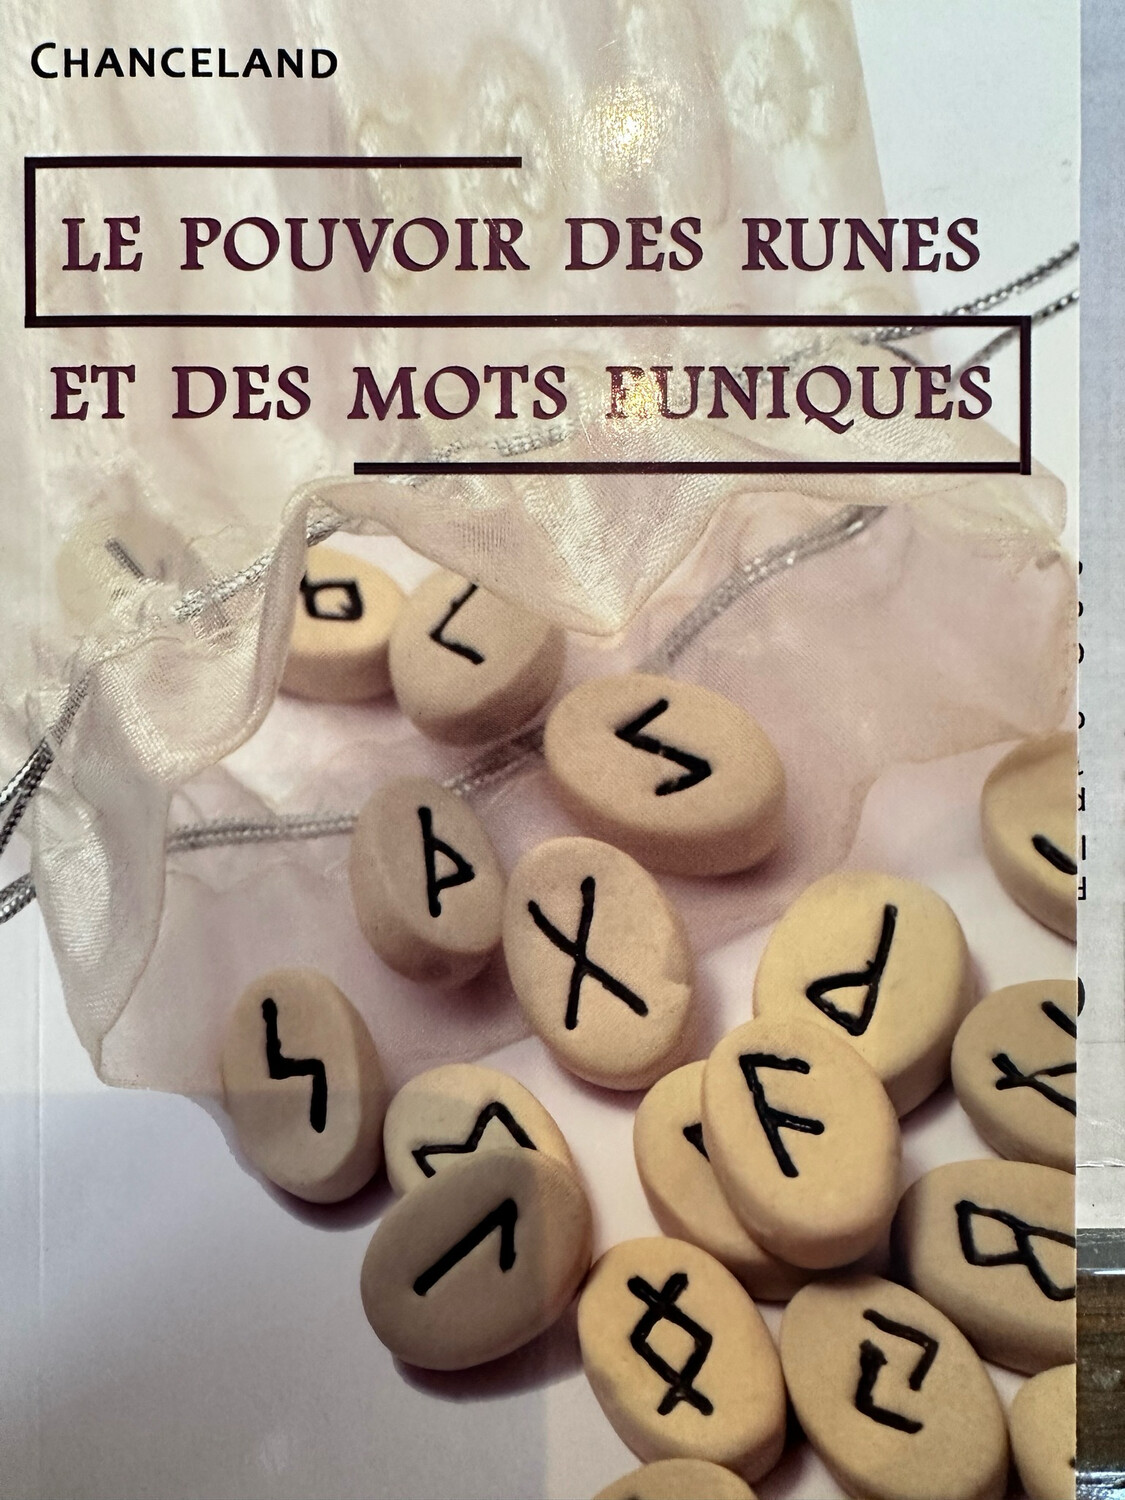 Le pouvoir des runes et des mots runiques 